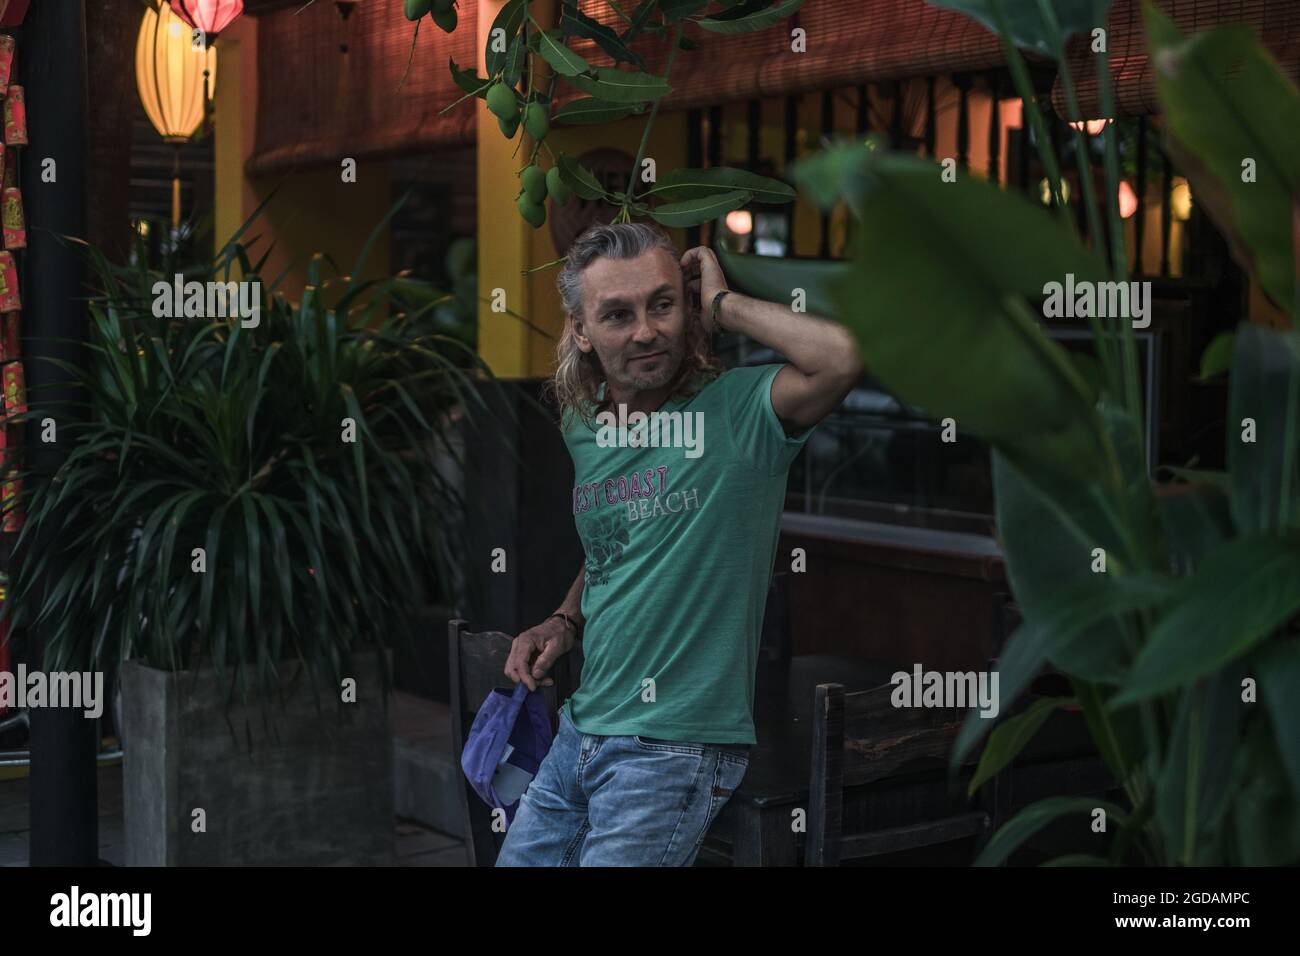 Porträt eines reifen Mannes in T-Shirt, Jeans stehend und mit dem Kopf. Lange graue Haare. Chinesische Laternen. Abend. Tropische Bäume im Hintergrund. Stockfoto